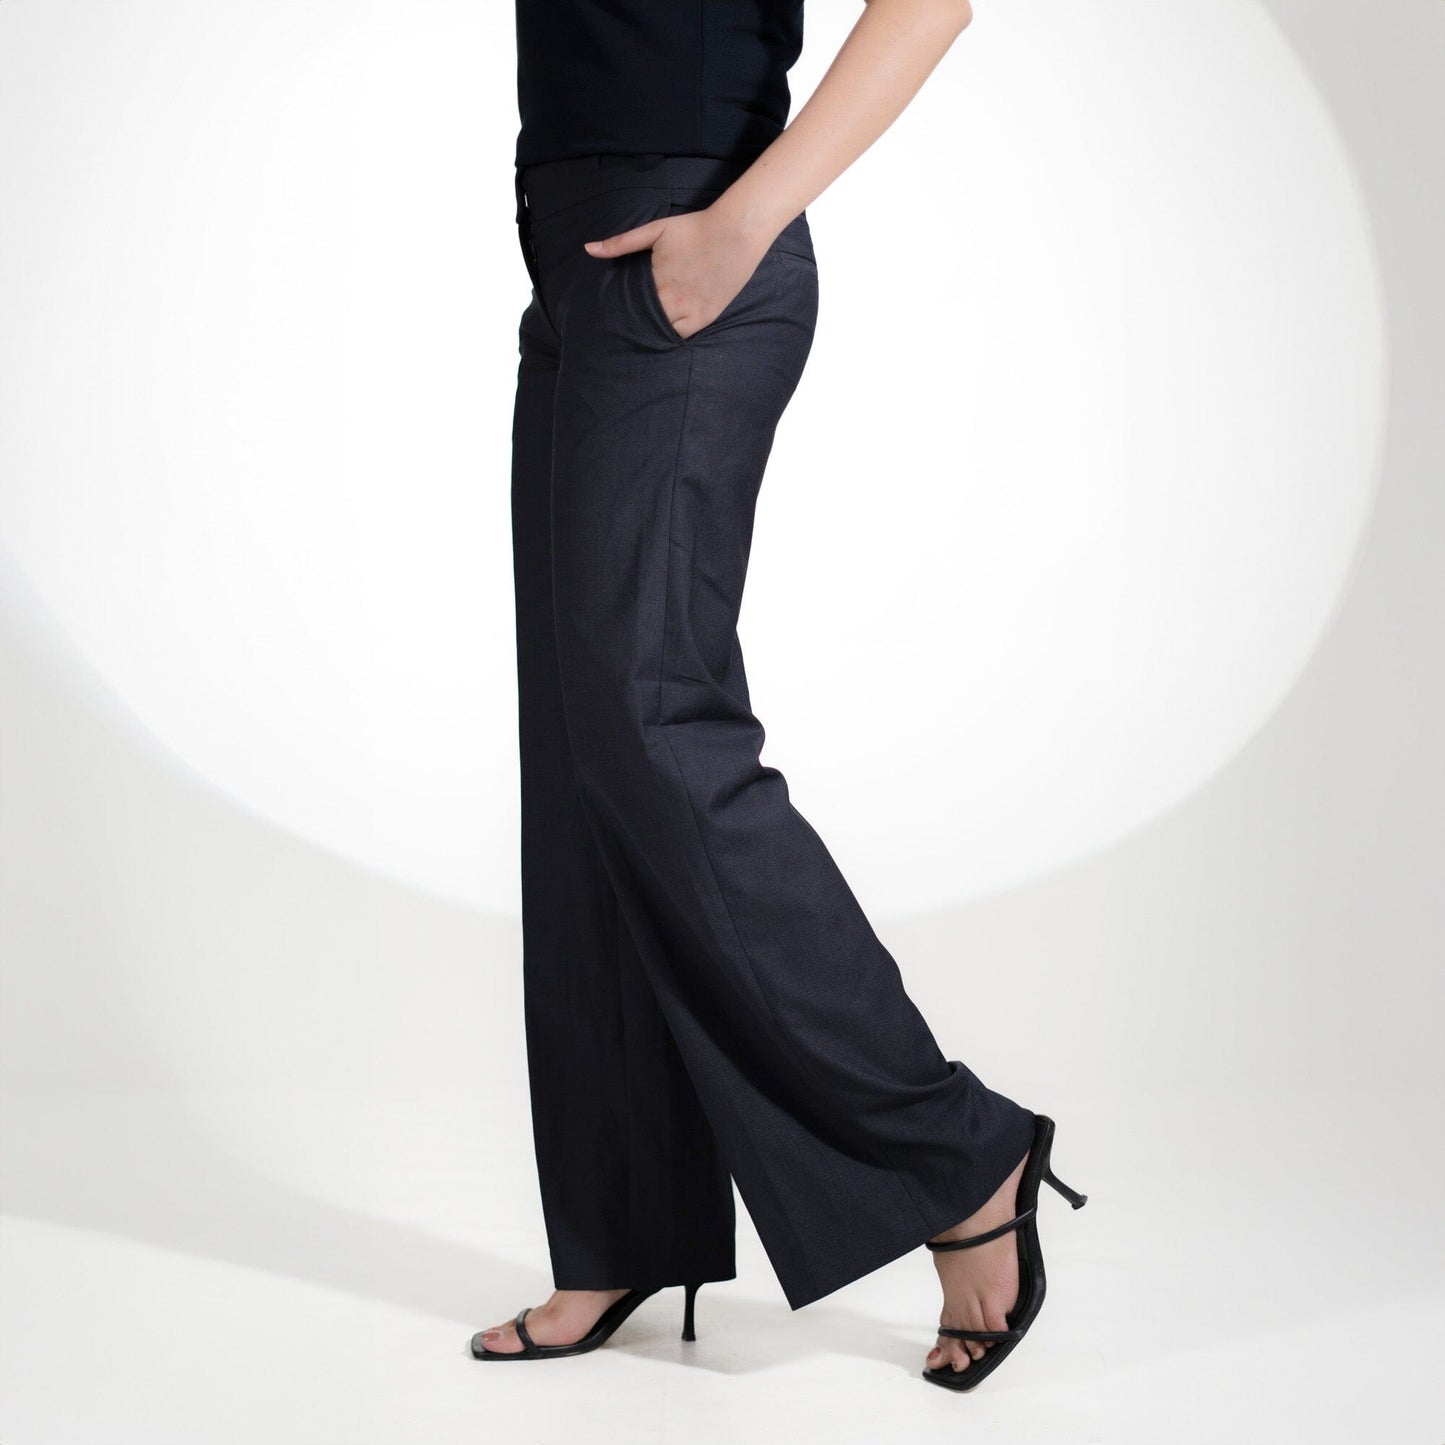 HM Women's Oviedo Regular Fit Dress Pants Women's Cargo Pants First Choice 